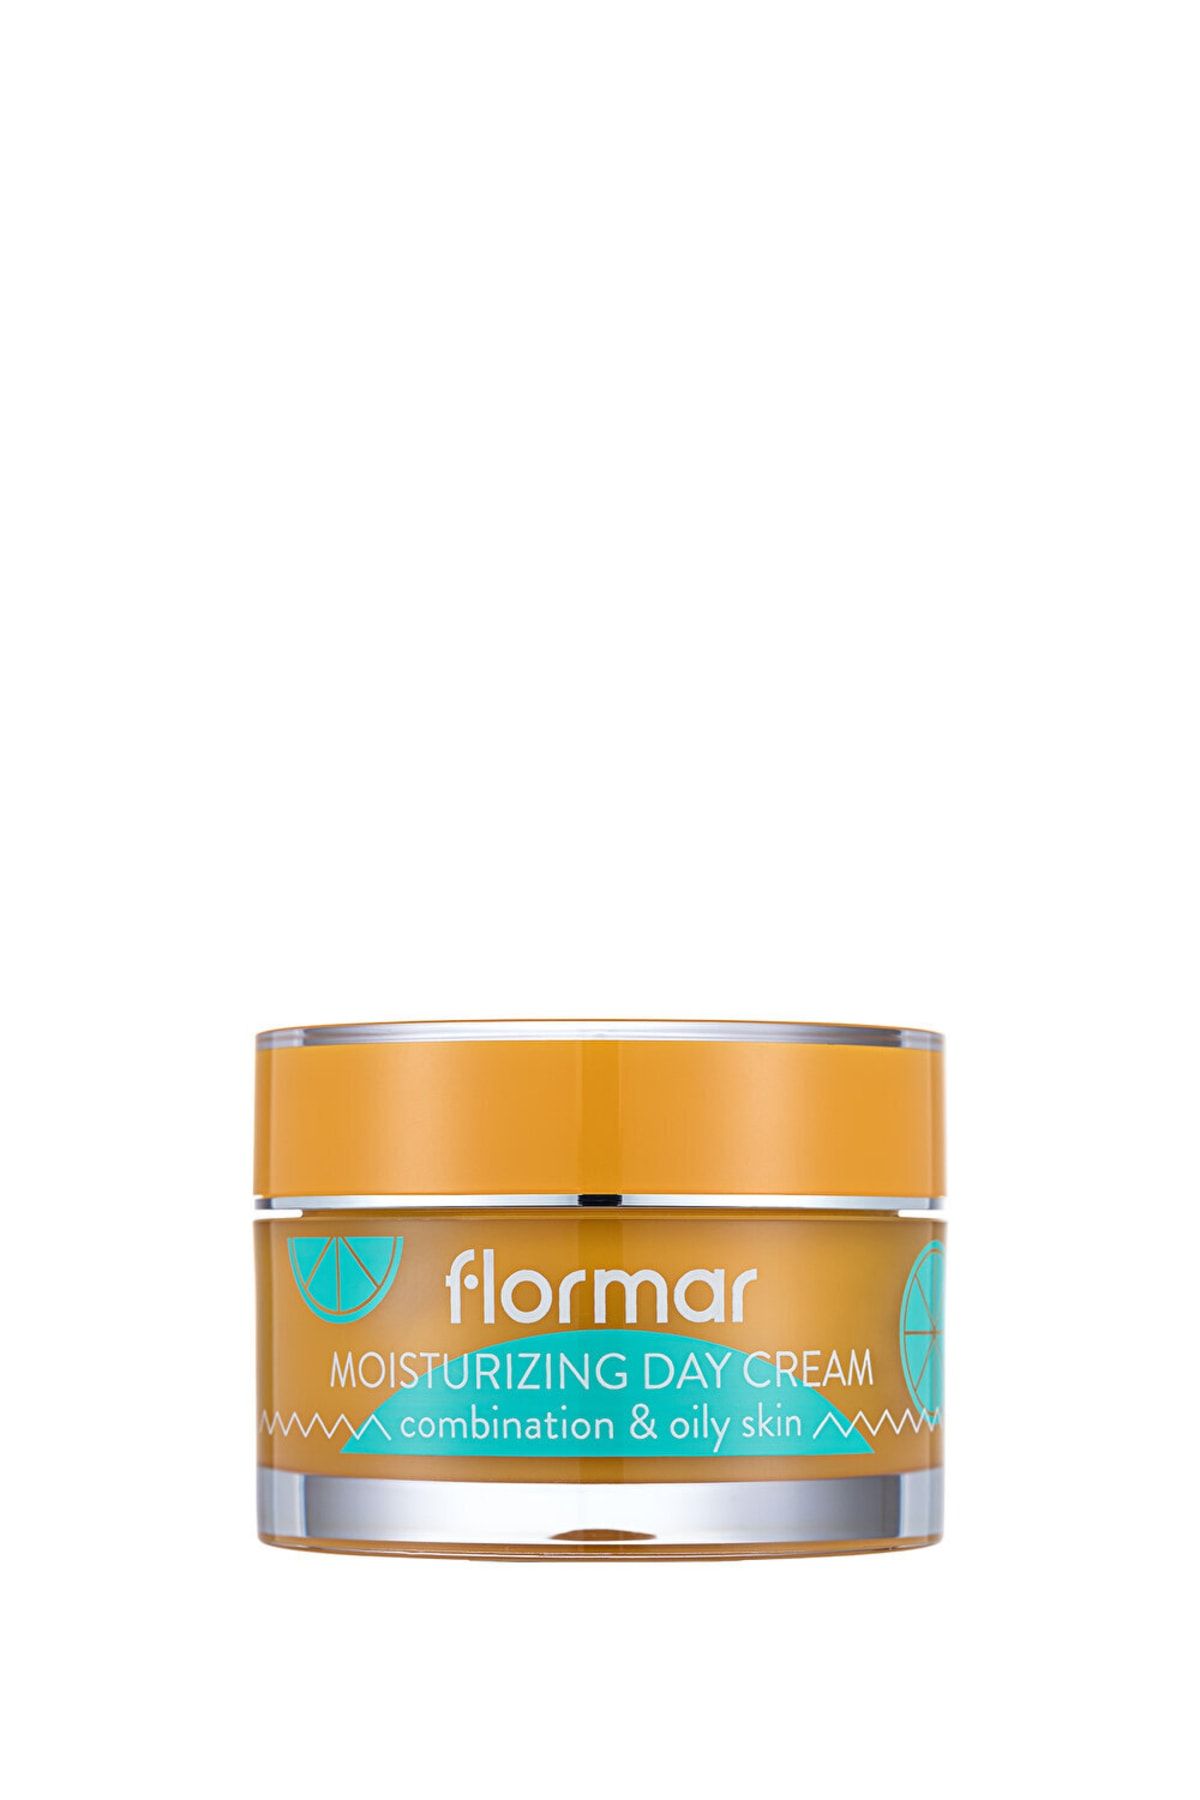 Flormar Yüz Nemlendirici Krem - Moisturizing Day Cream 002 Combination&oily Skin 36000003-002